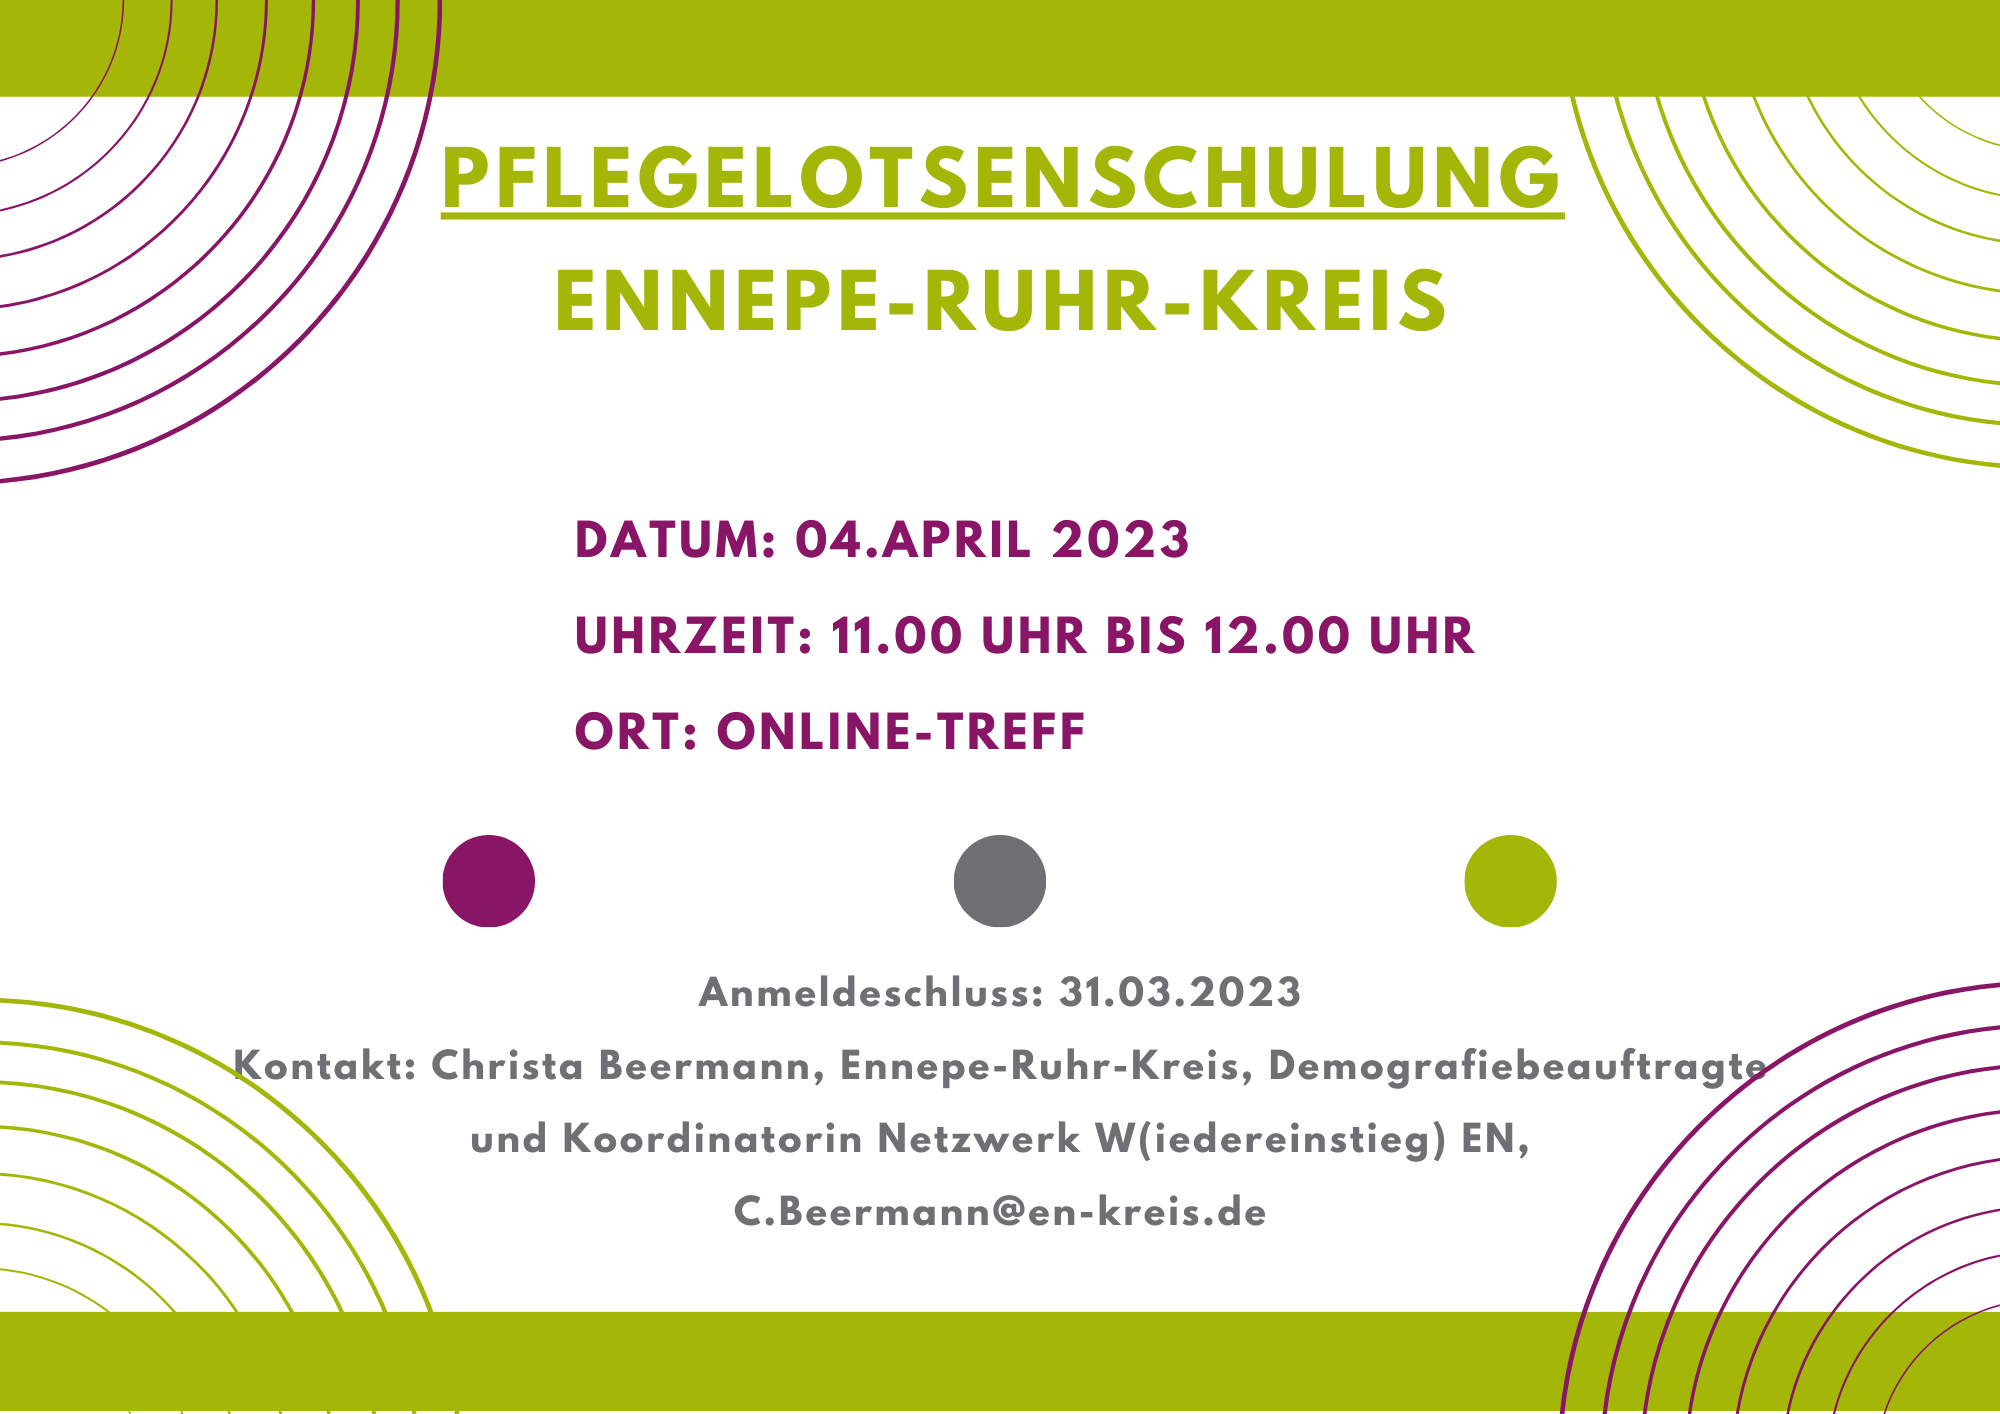 Pflegelotsenschulung für Ennepe-Ruhr-Kreis 